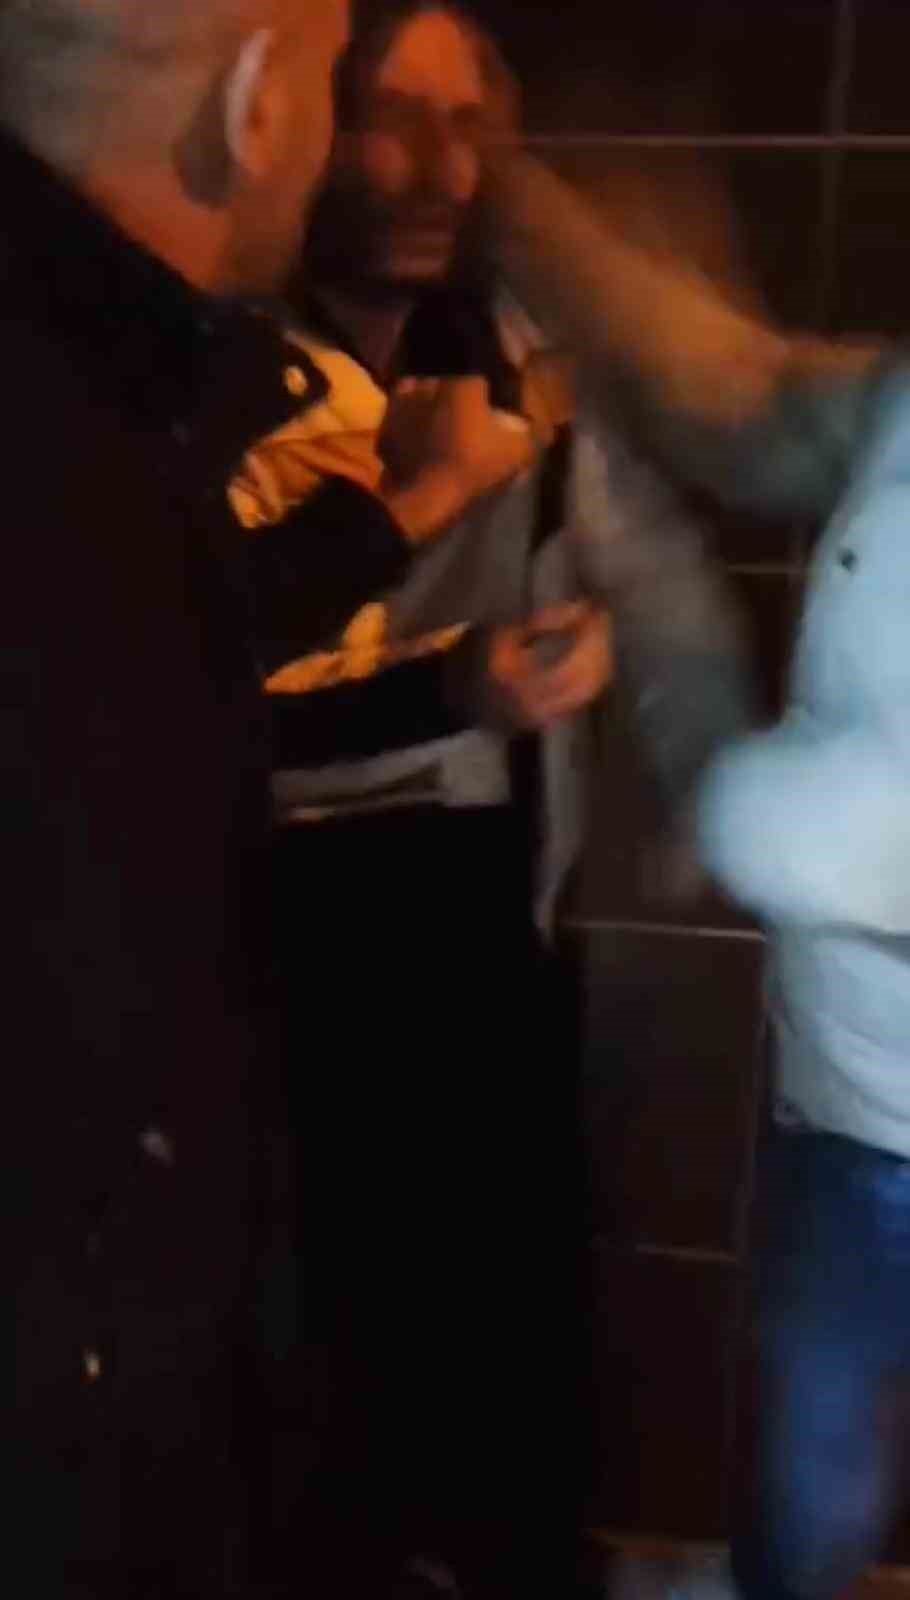 İstanbul’da esnafın yakaladığı hırsıza önce sorgu sonra dayak kamerada
